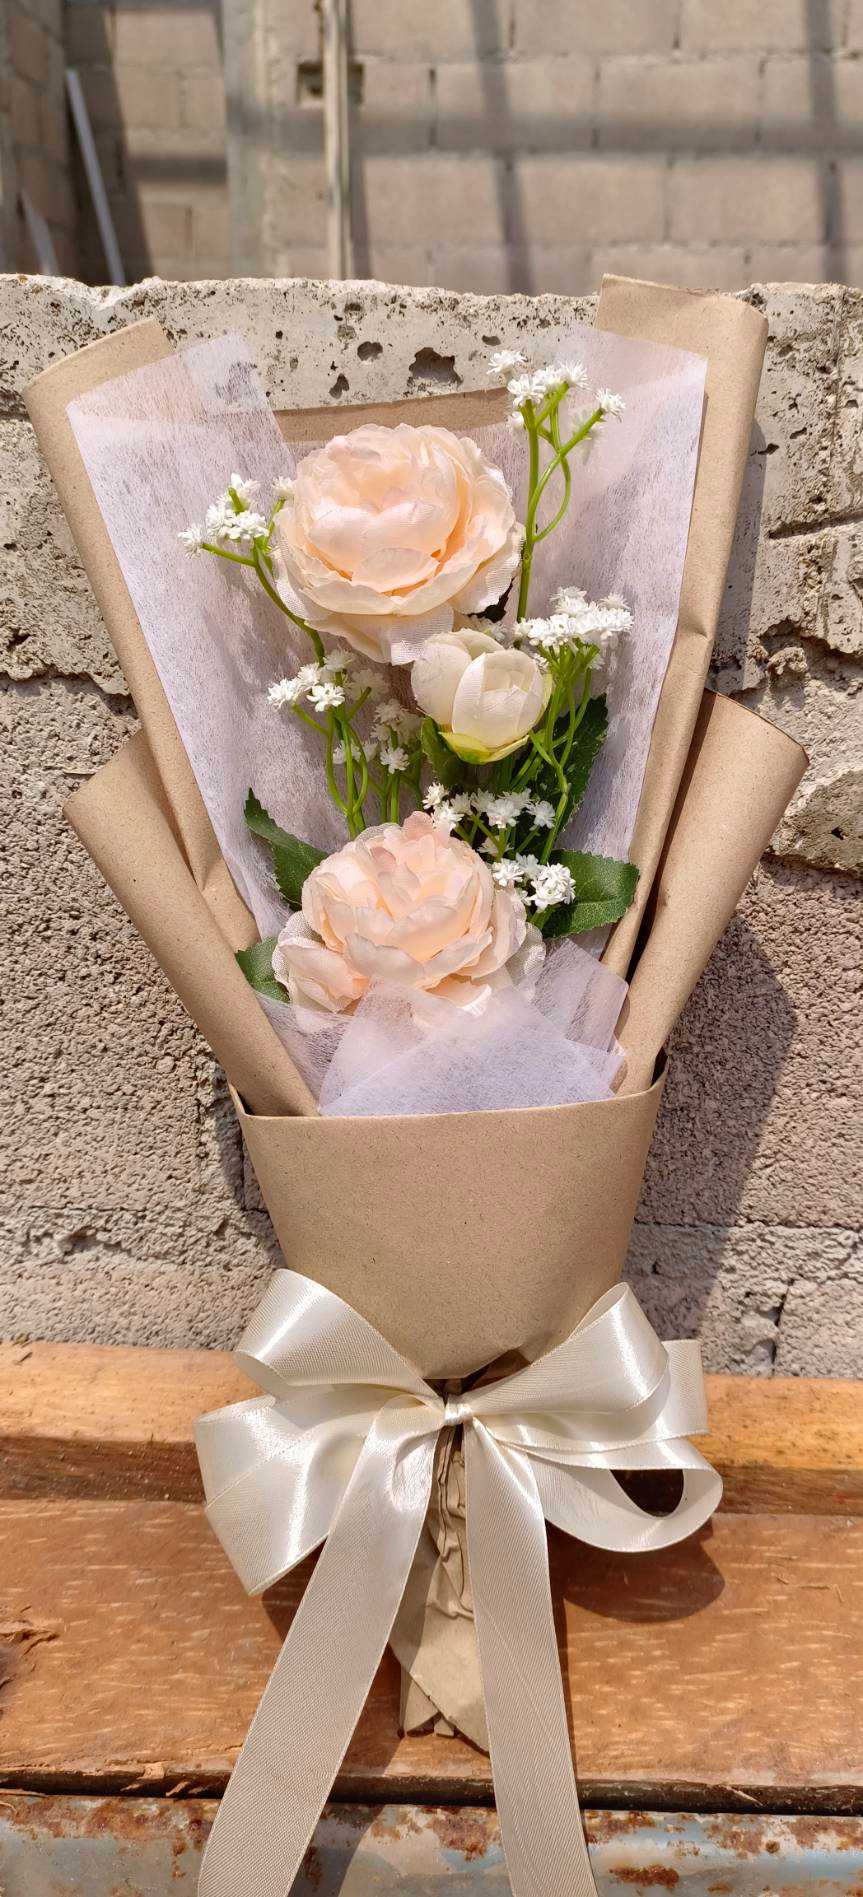 L-03ช่อดอกกุหลาบให้แฟน💐เขียนการ์ดฟรีทักแชท ดอสารภาพรัก บอกรัก ขอแต่งงาน  ดอกไม้ให้แฟน จัดส่งทั่วไทย | Line Shopping